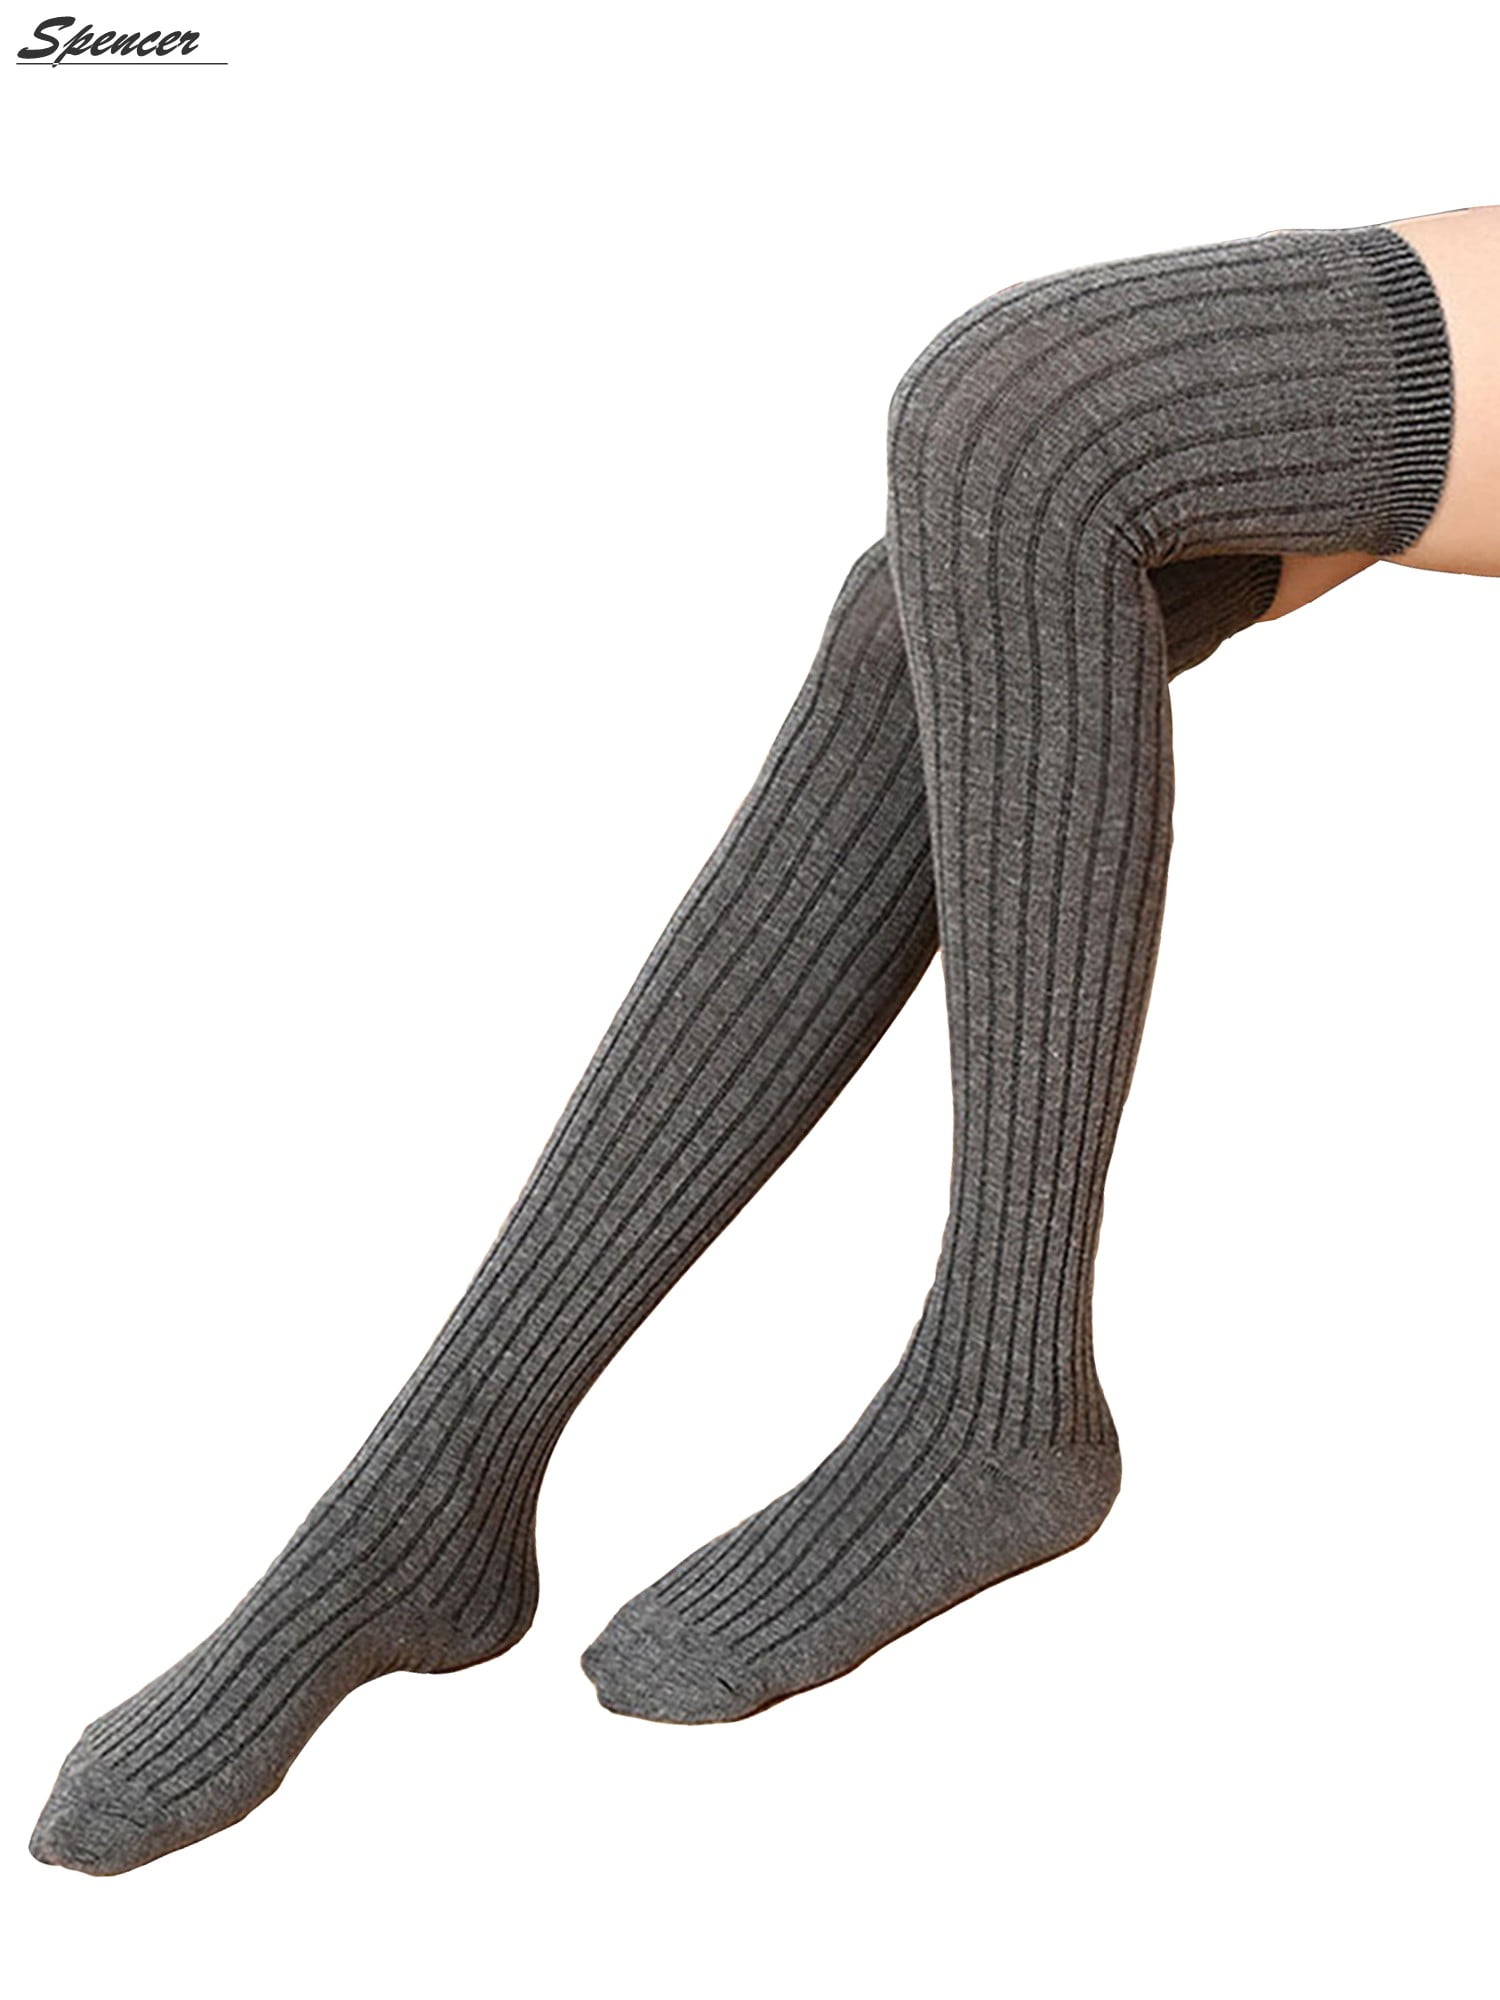 SpencerToys - Women Thigh High Socks Over the Knee Leg Warmer Tall Long ...